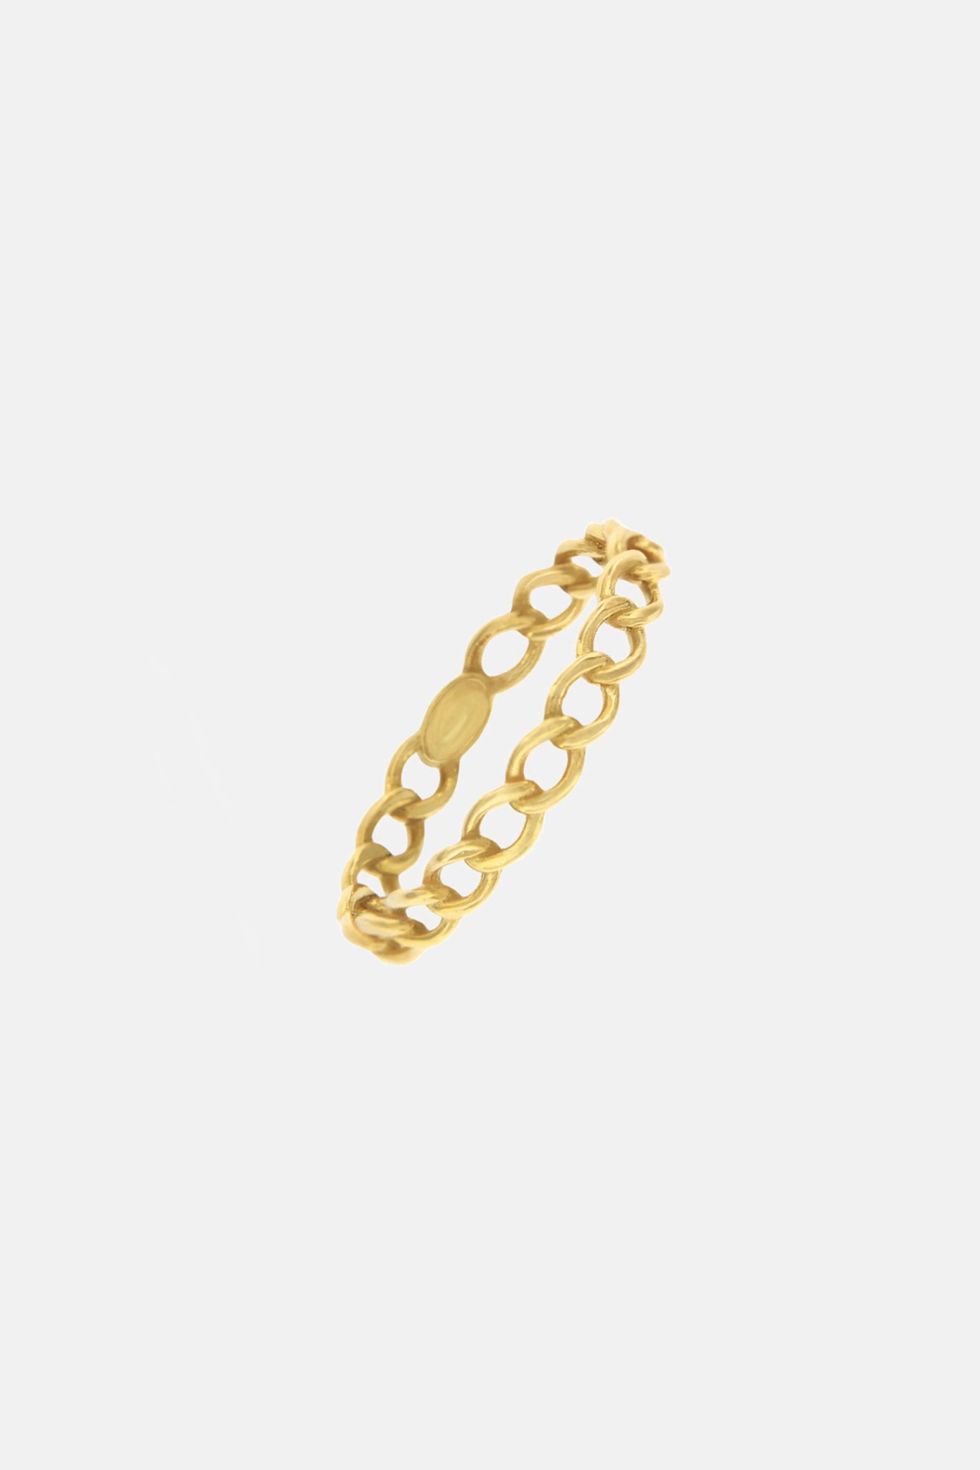 anillo mii con eslabones de oro